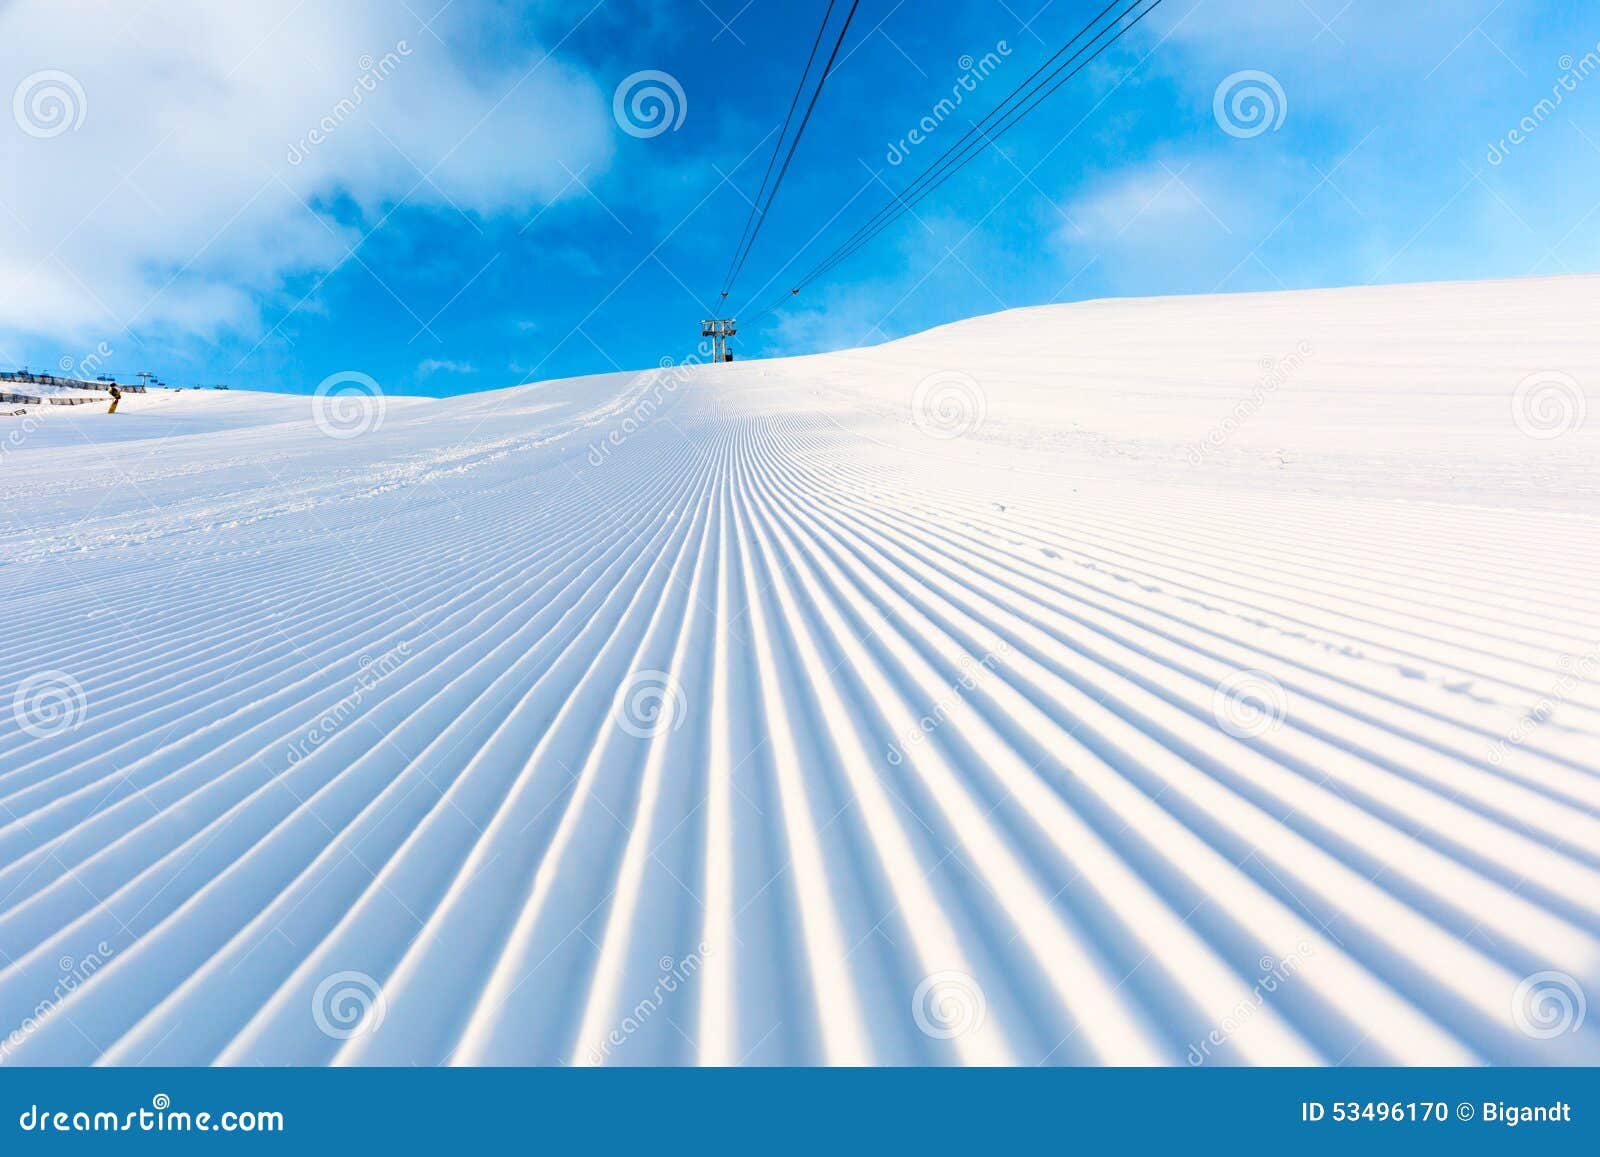 groomed ski piste